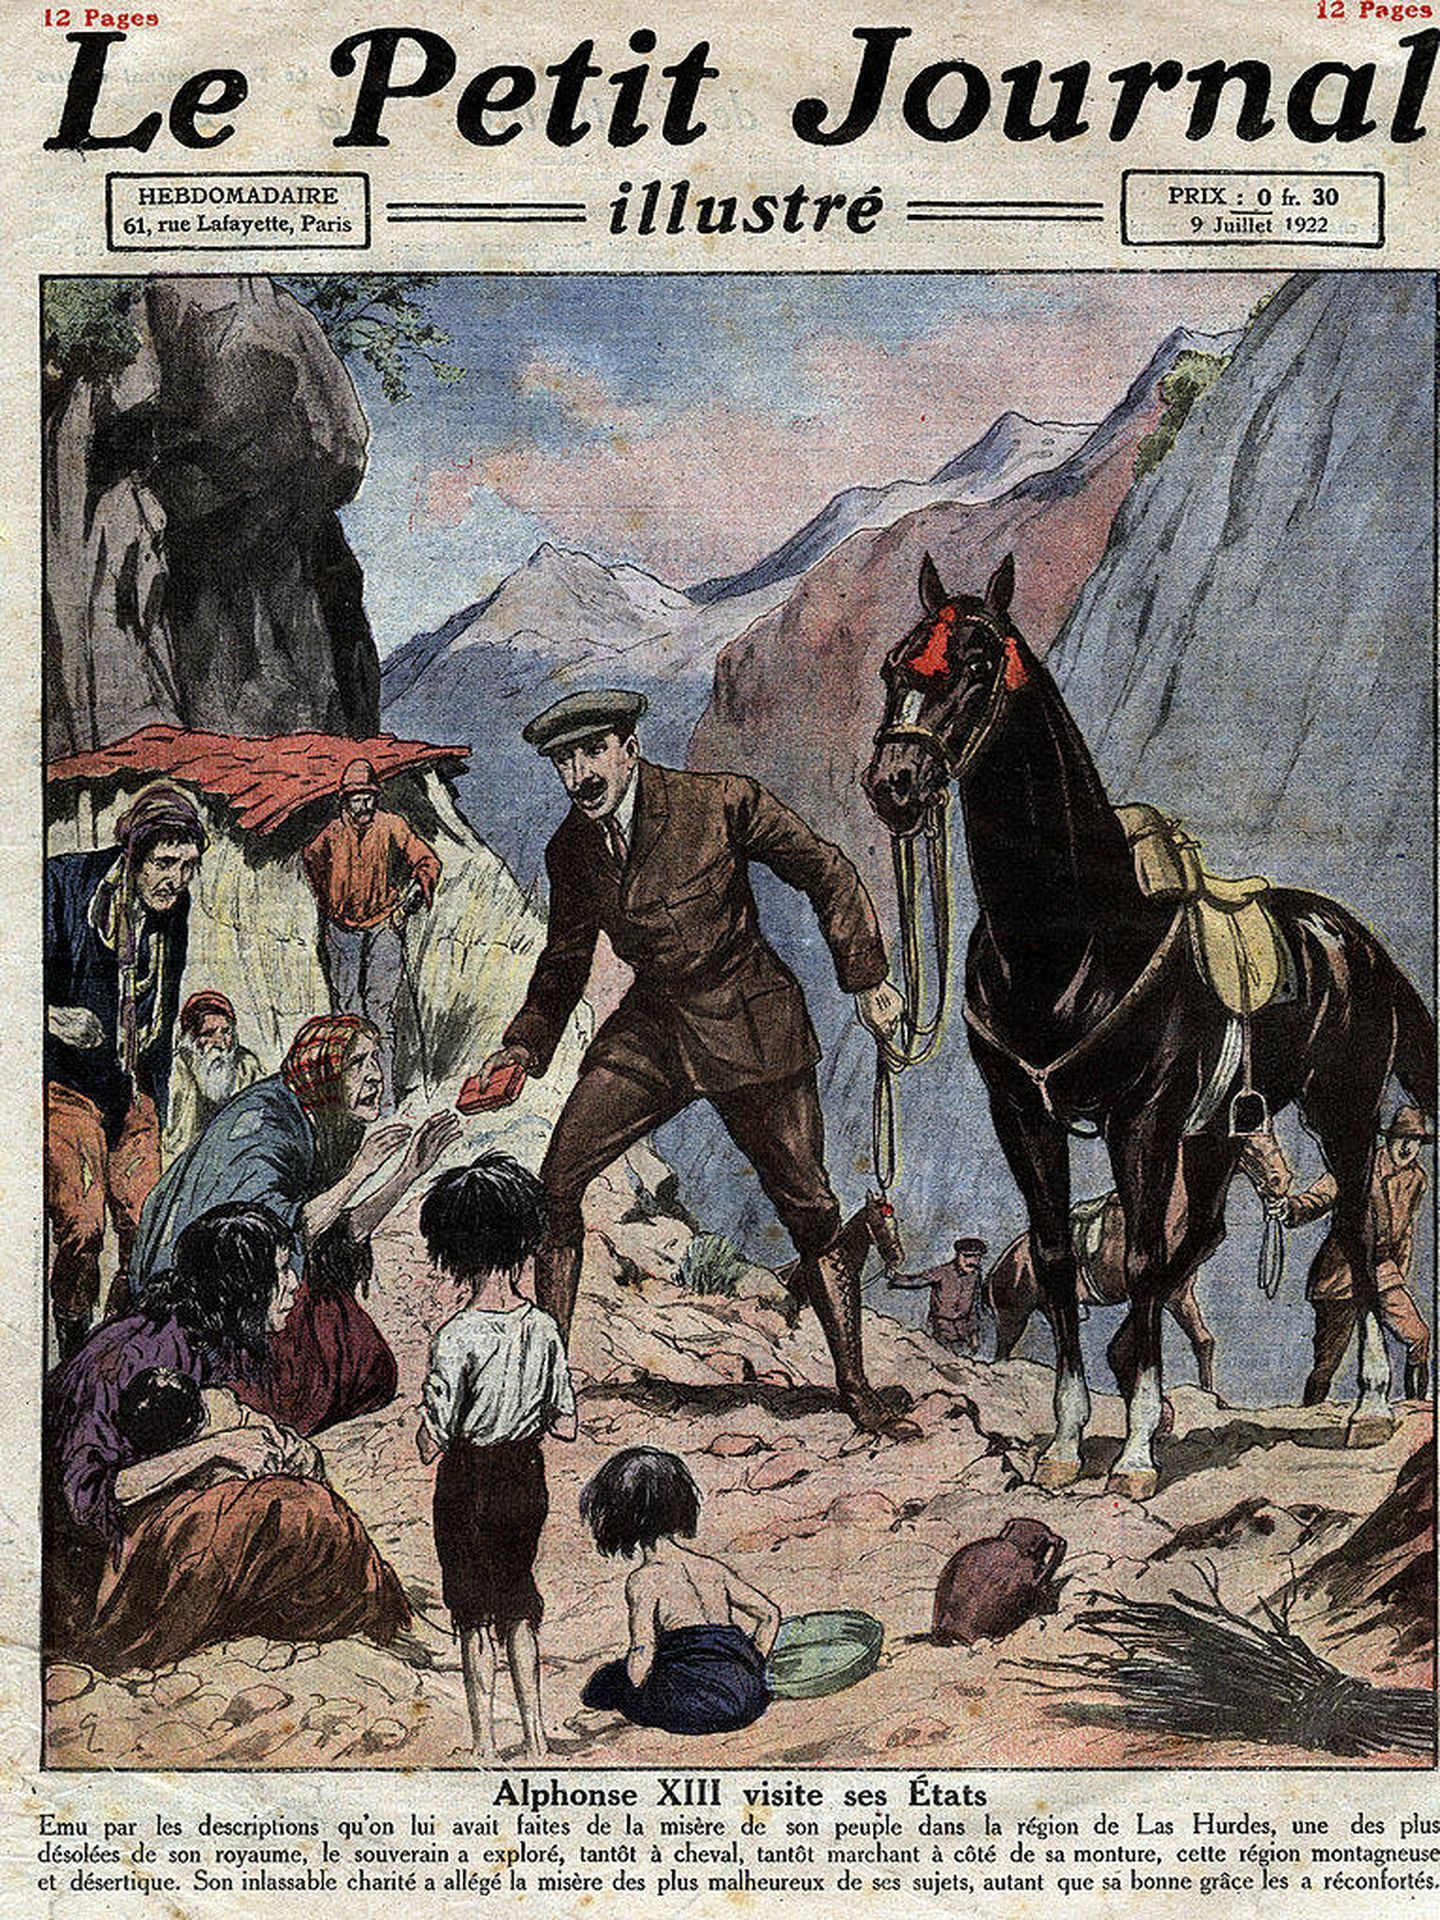 La visita de Alfonso XIII a Las Hurdes en la revista francesa 'Le Petit Journal'. (Getty)